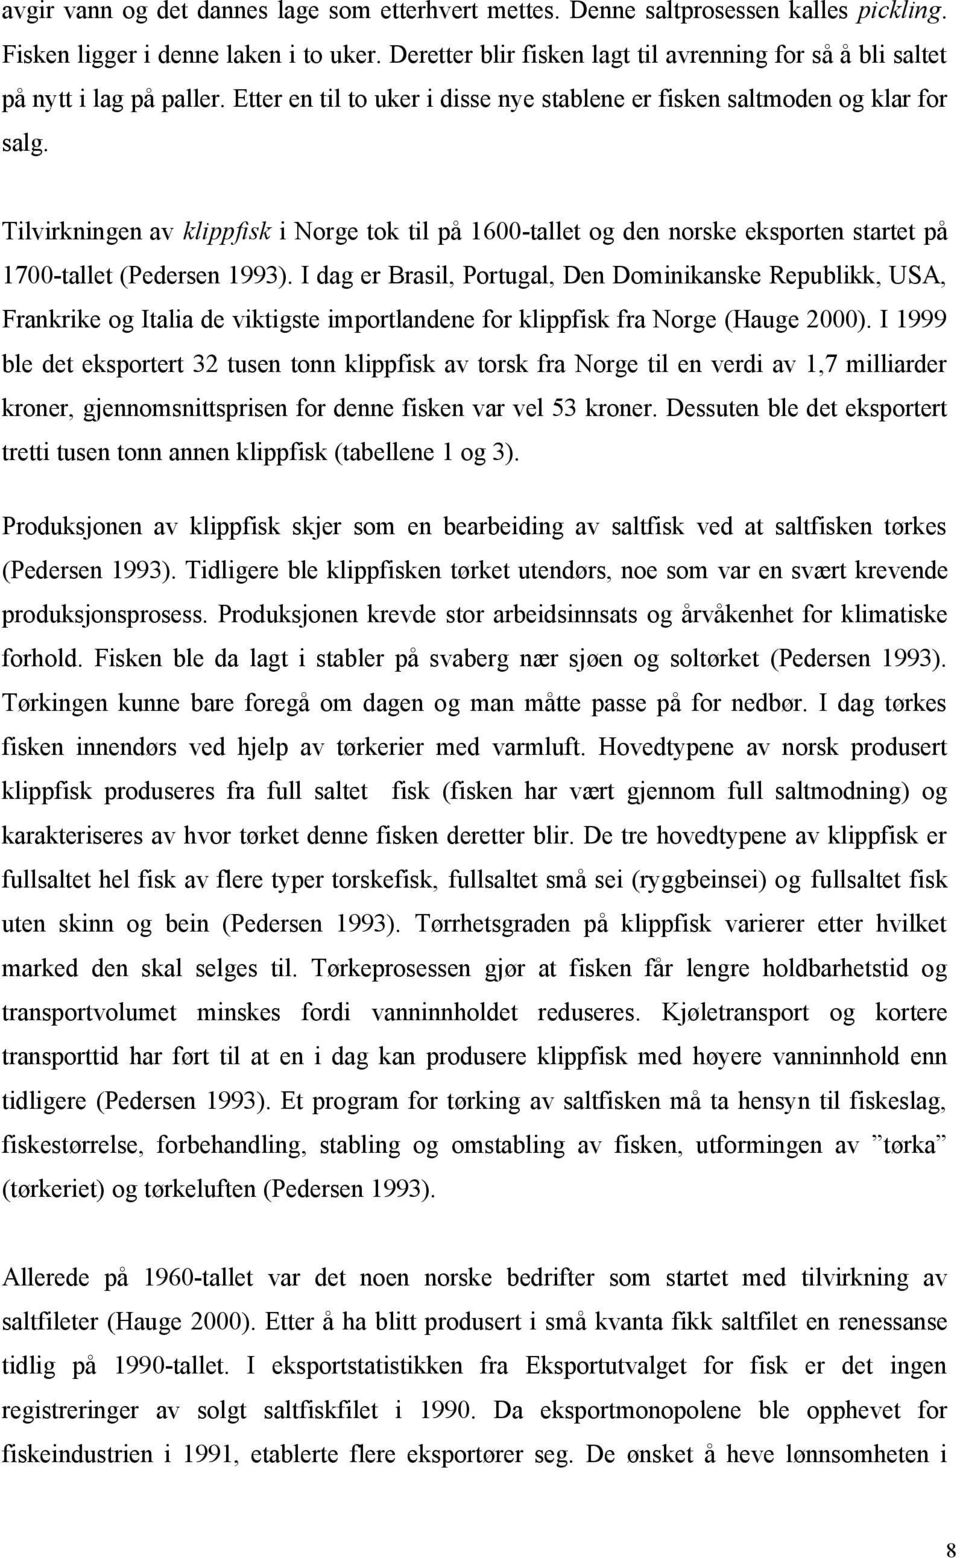 Tilvirkningen av klippfisk i Norge tok til på 1600-tallet og den norske eksporten startet på 1700-tallet (Pedersen 1993).